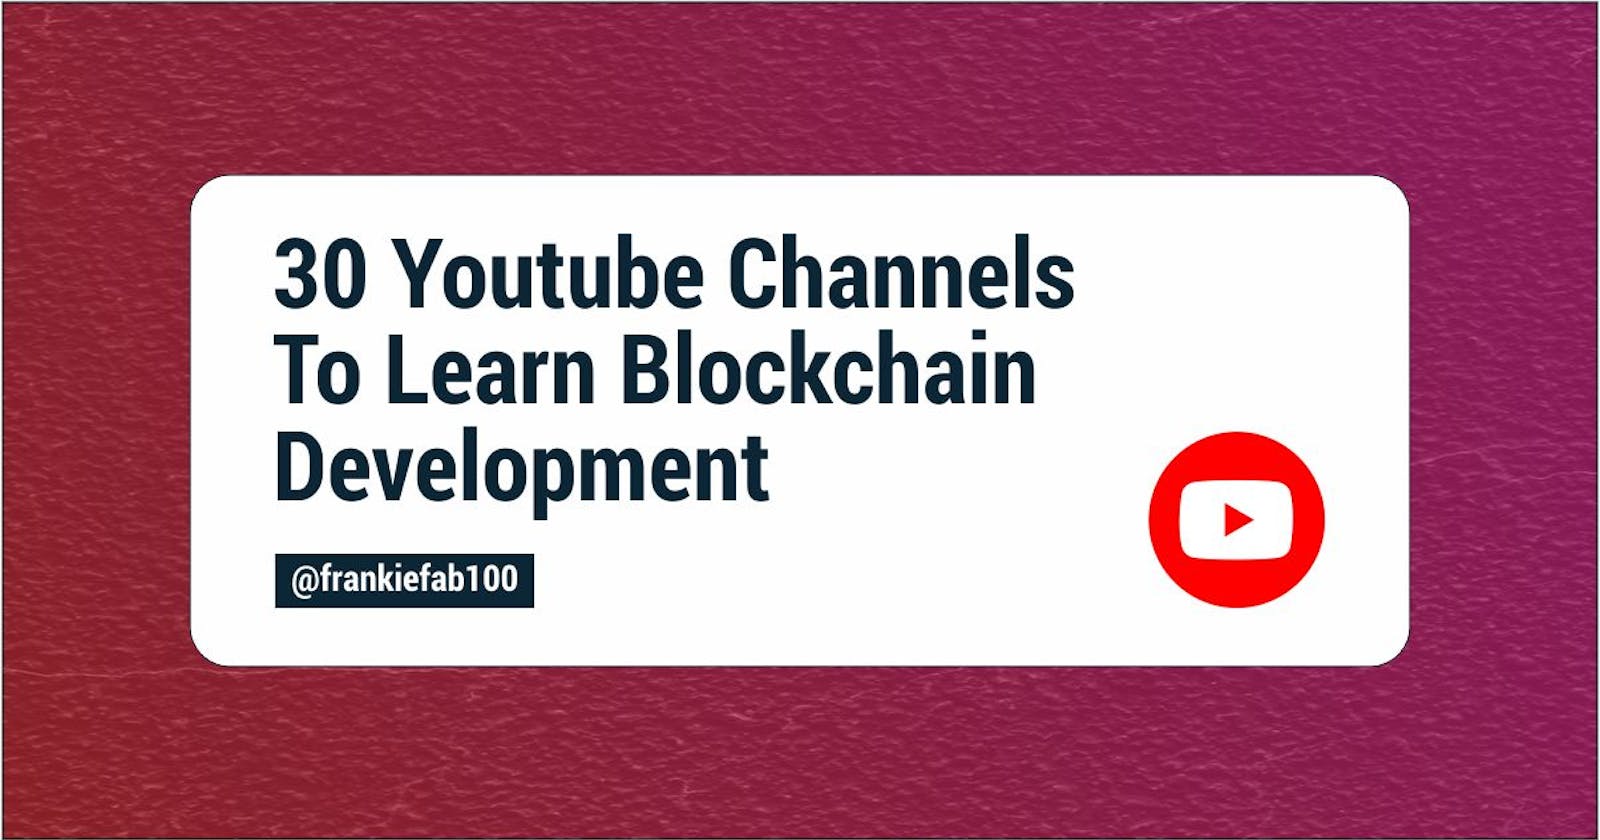 30 Youtube Channels To Learn Blockchain Development